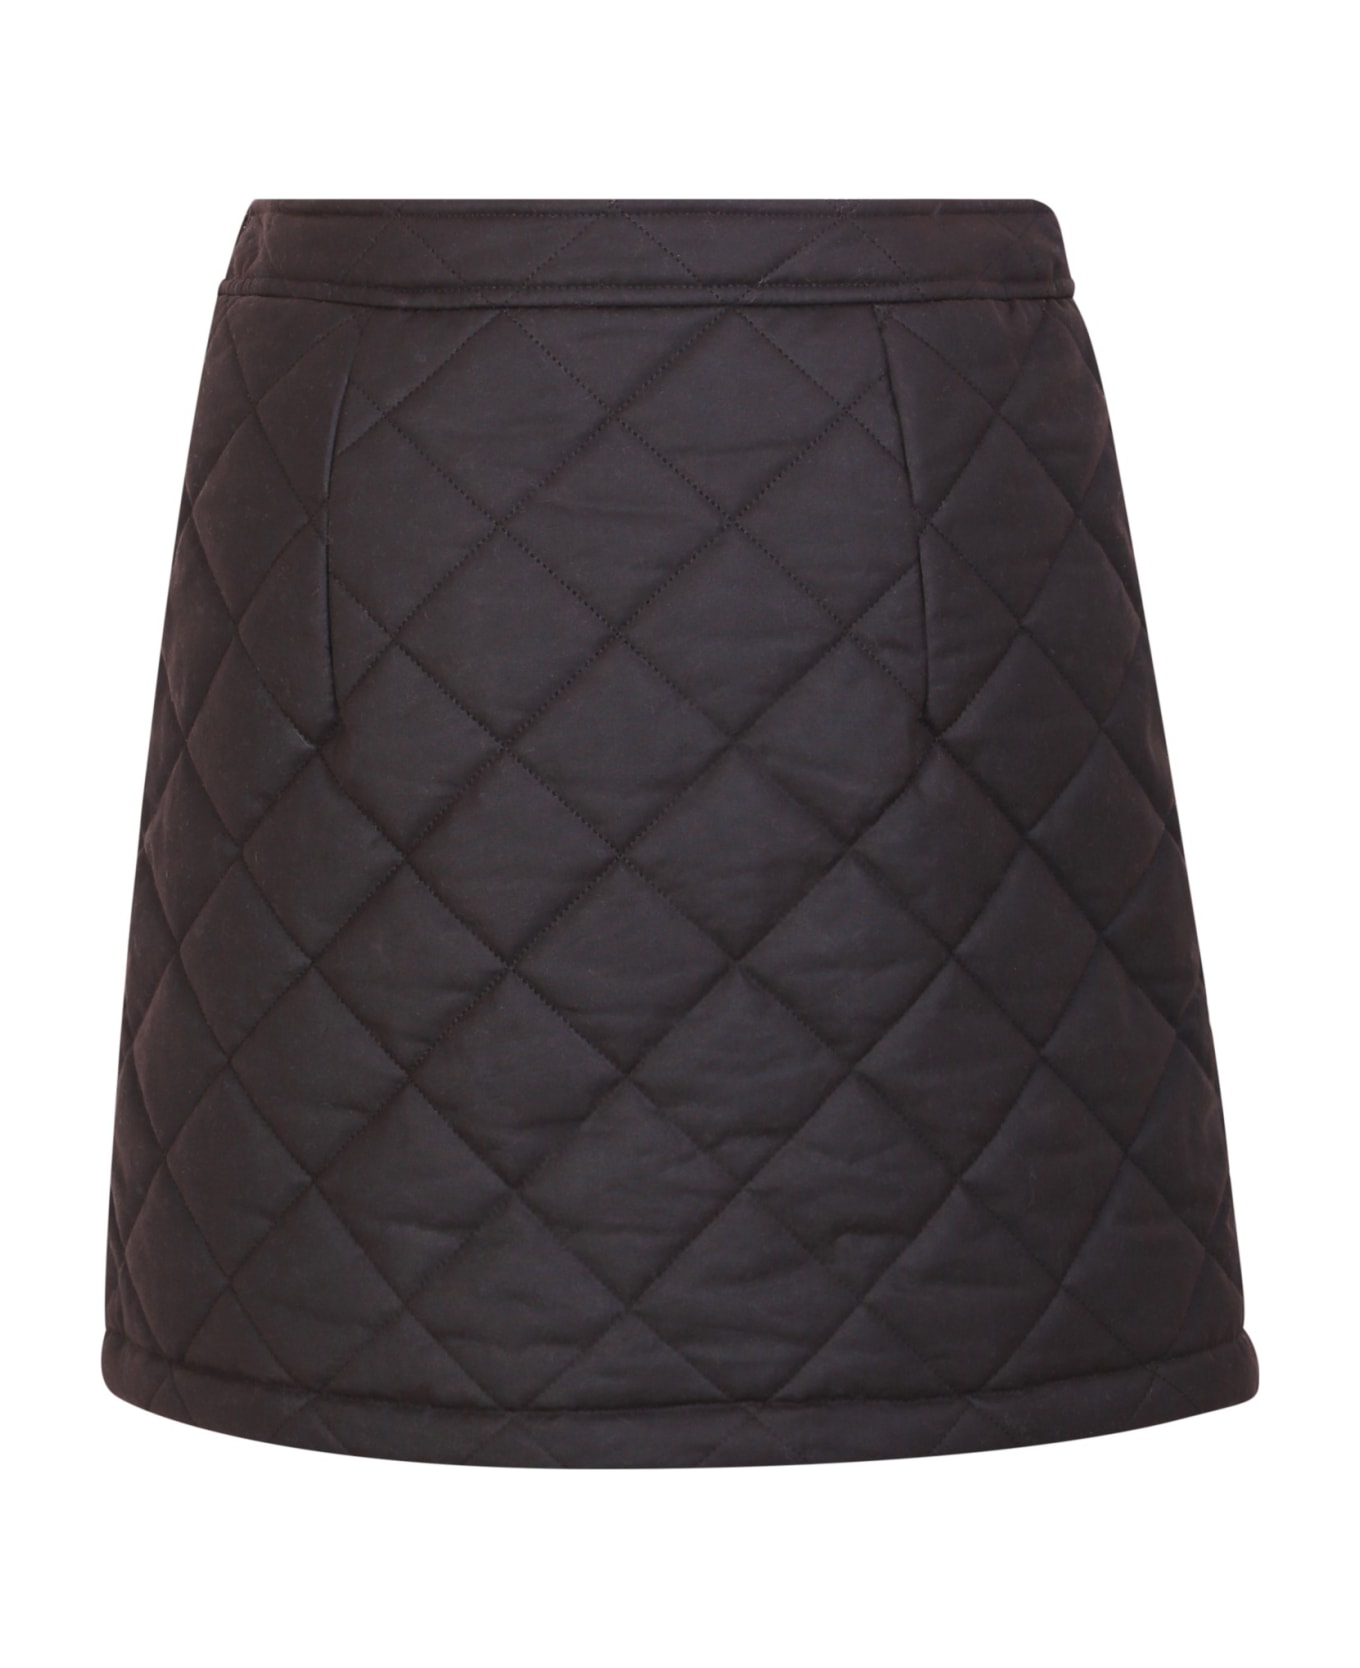 Burberry Casia Skirt - Brown スカート